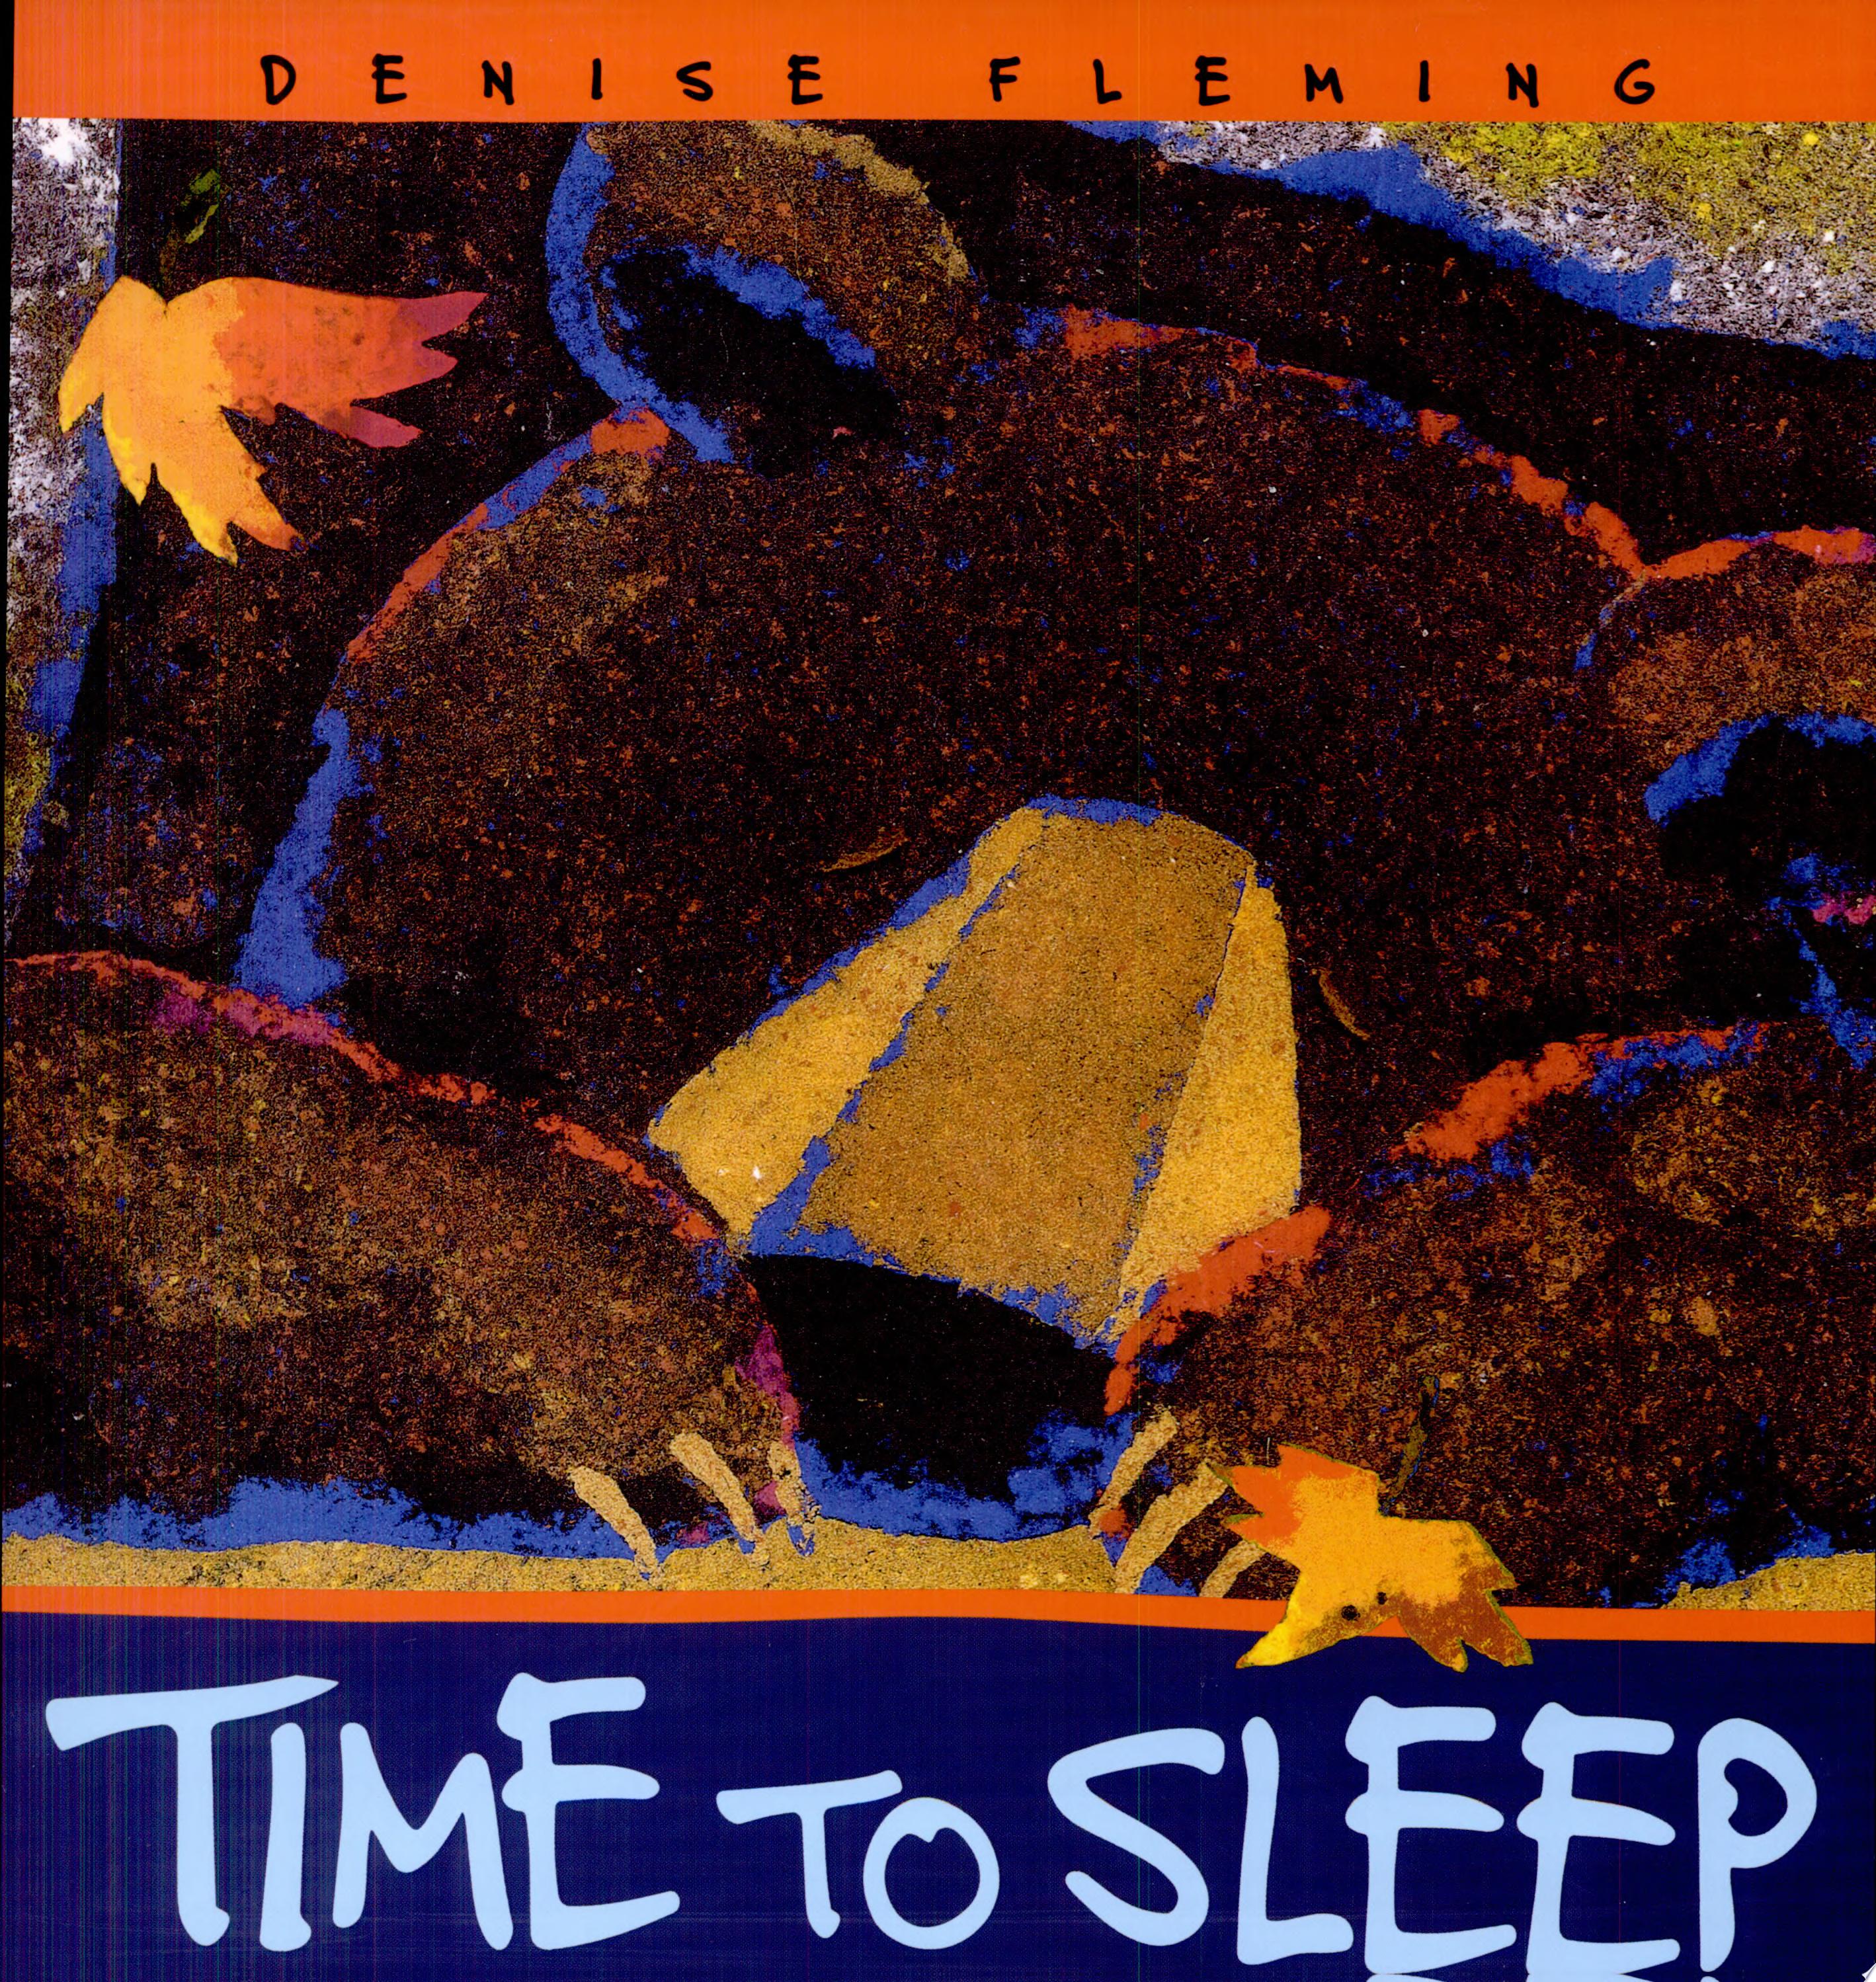 Image for "Time to Sleep"